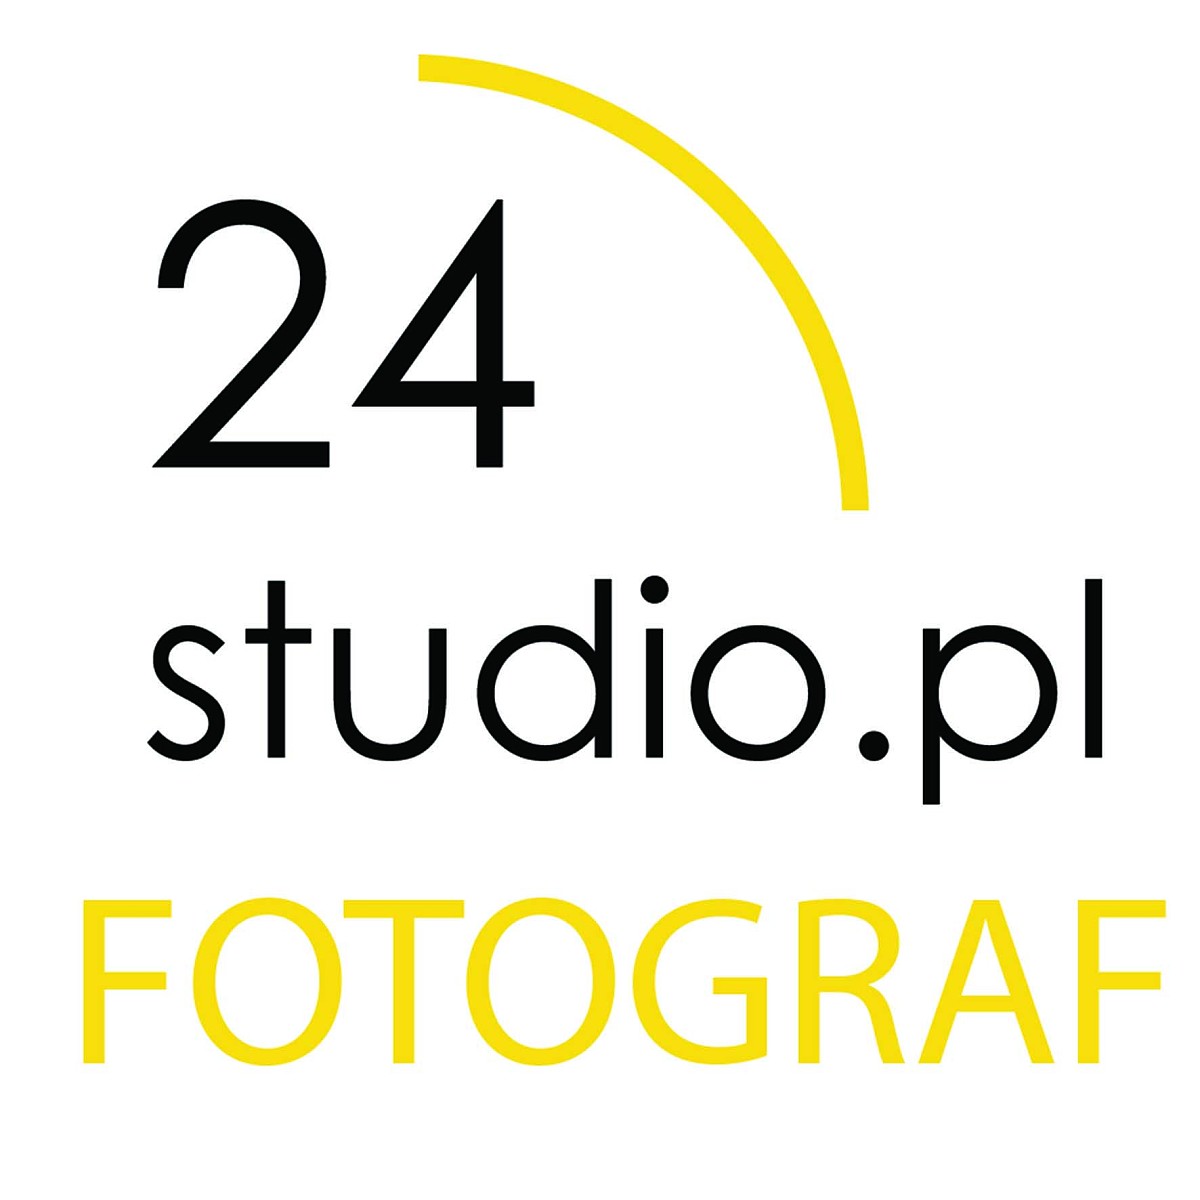 logo fotograf 24studio.pl w Kaliszu